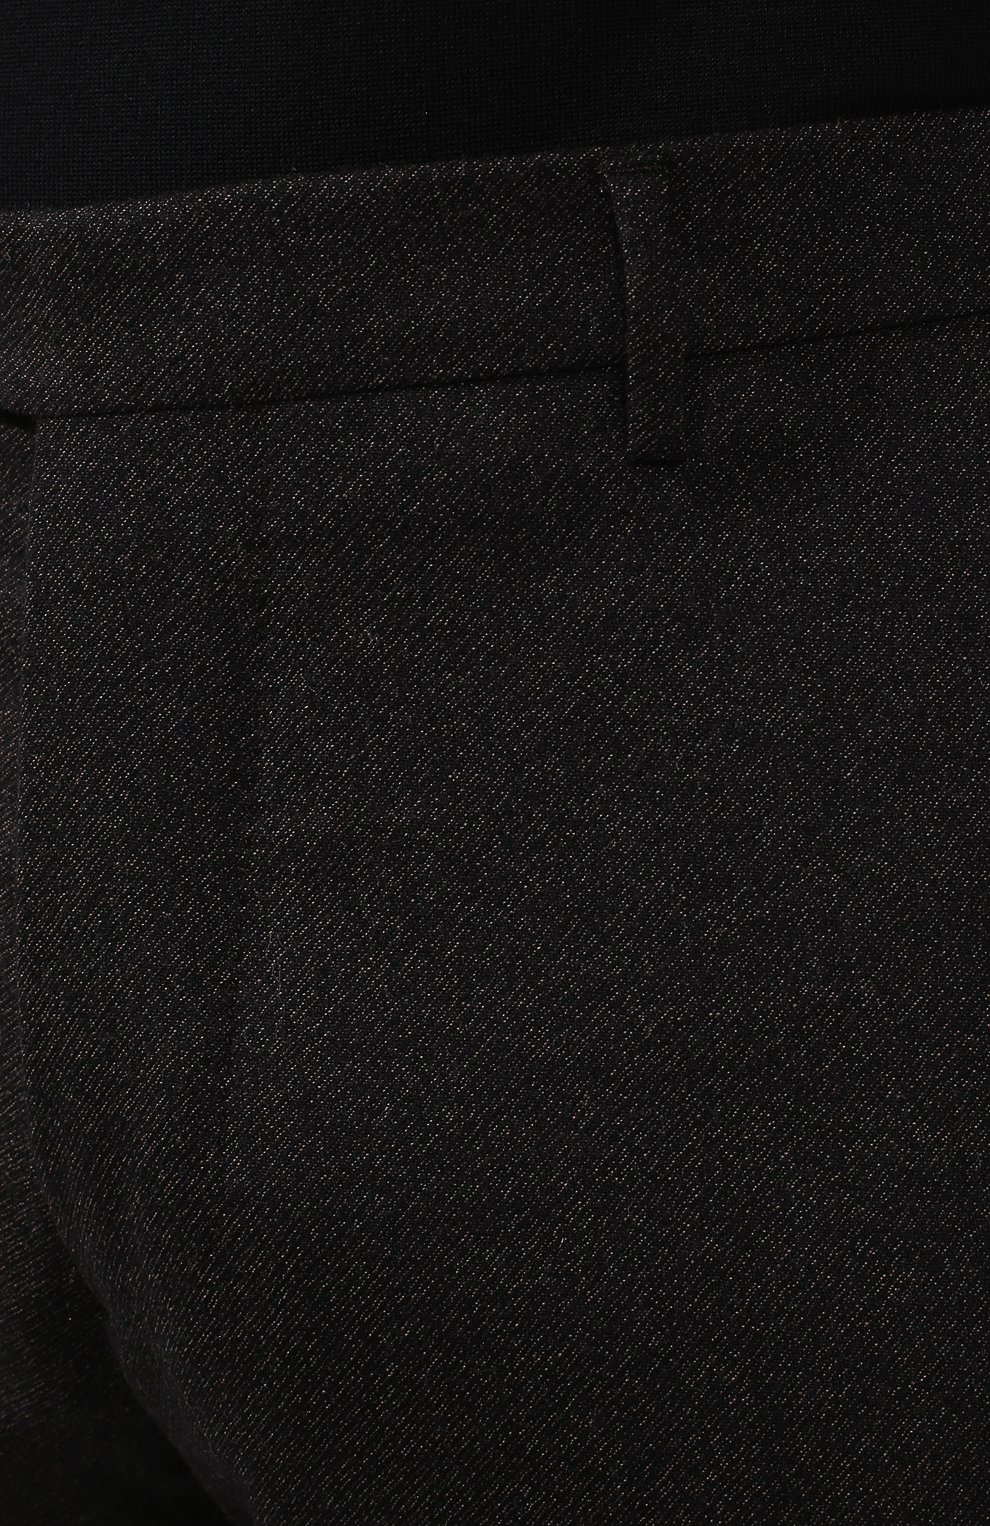 Мужские брюки из шерсти и кашемира ANDREA CAMPAGNA коричневого цвета, арт. SC/1/FA2064 | Фото 5 (Материал внешний: Шерсть; Длина (брюки, джинсы): Стандартные; Случай: Повседневный, Формальный; Стили: Классический; Материал подклада: Синтетический материал)